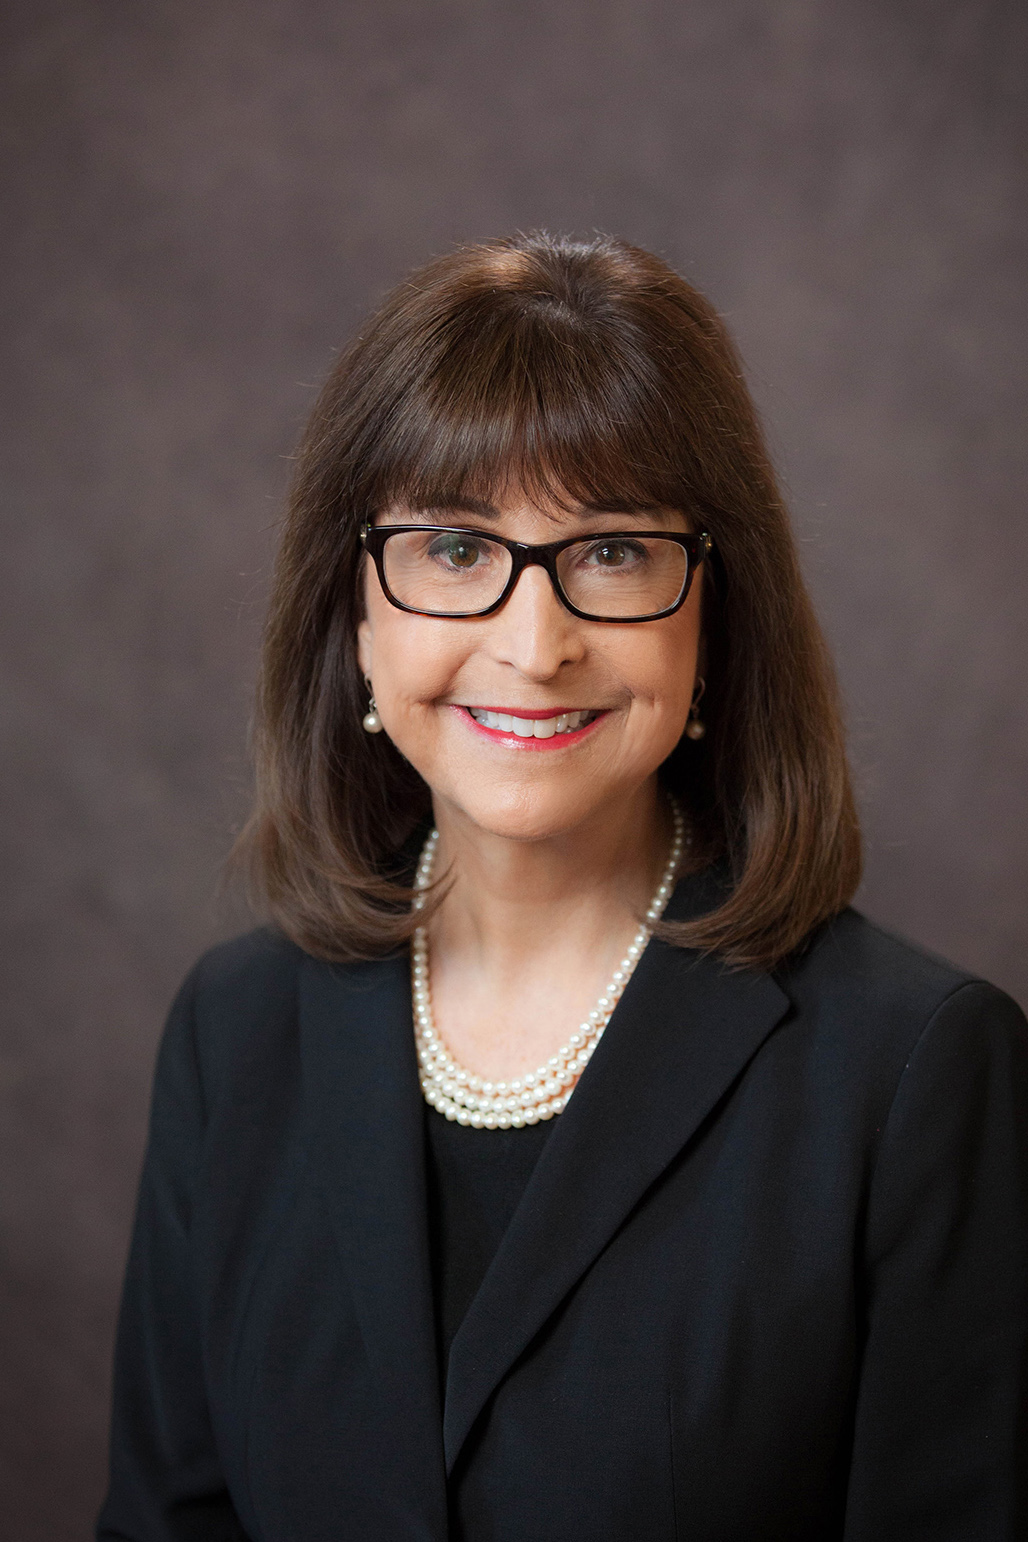 Dr. Marlene Salas-Provance